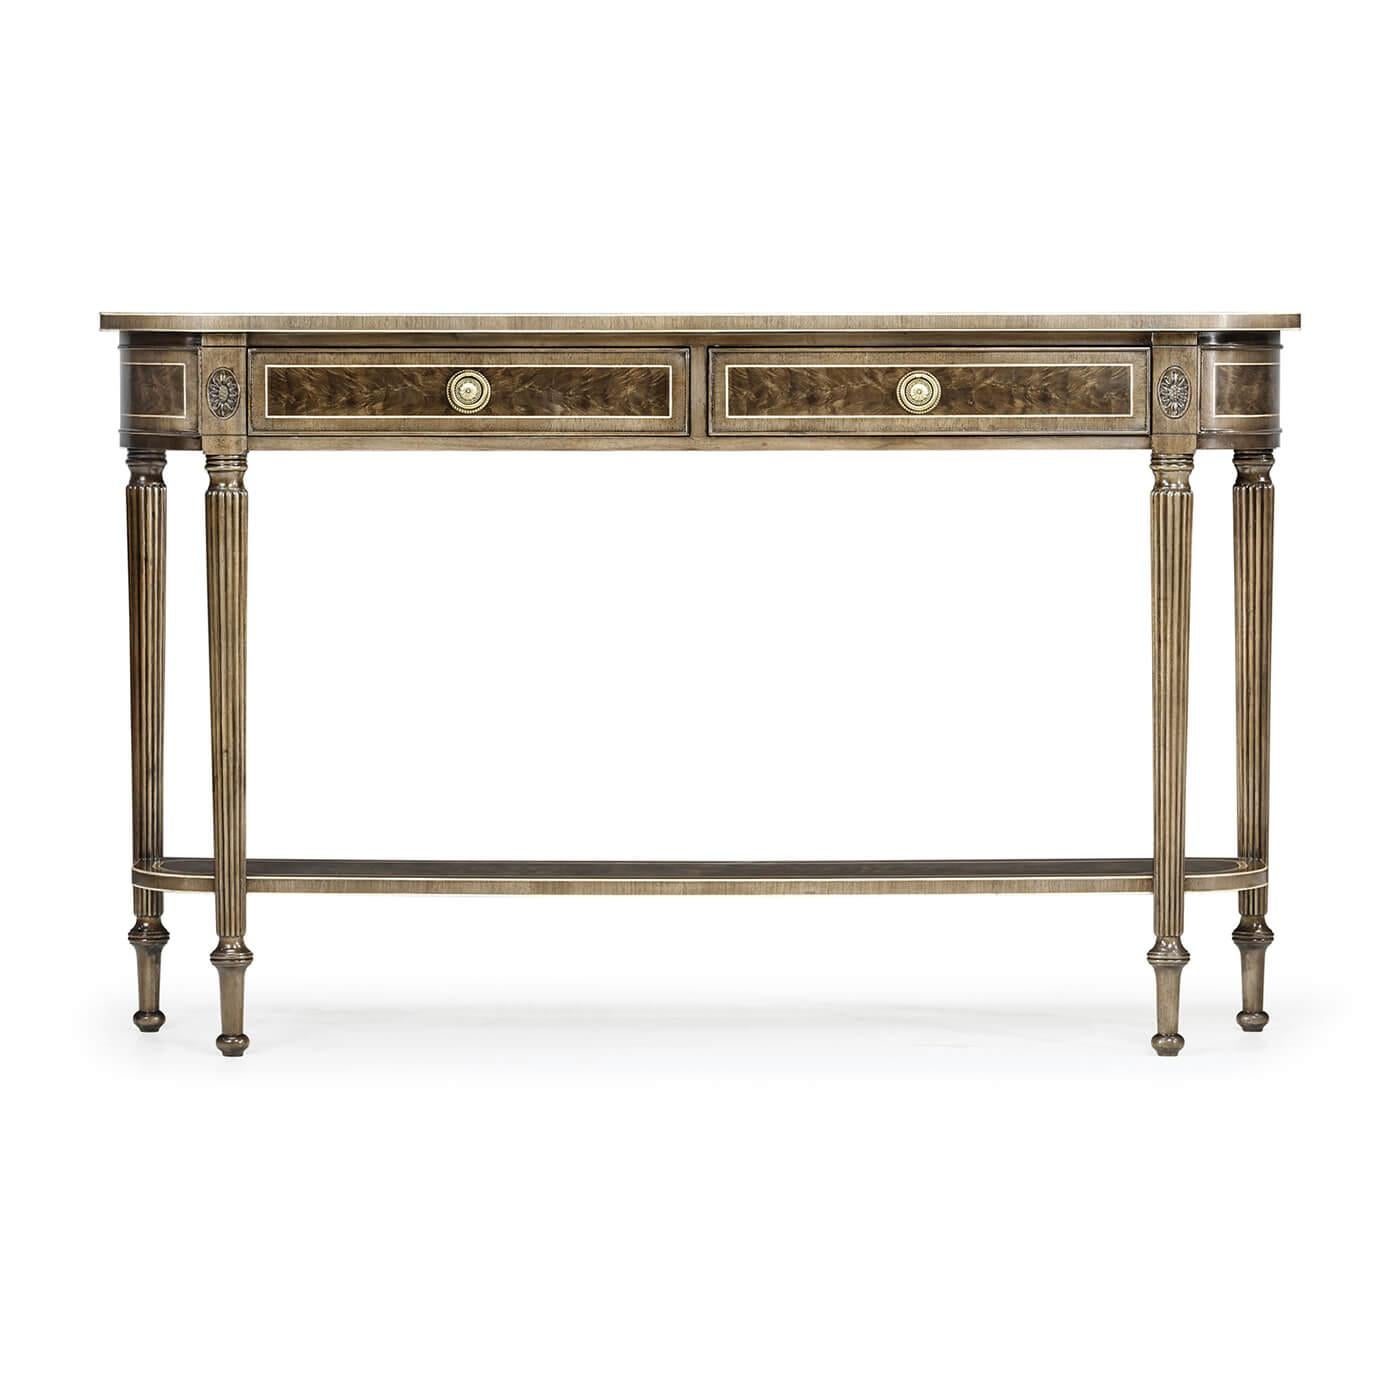 Table console en forme de D de style Régence tardive, en acajou blanchi, avec une finition antiquaire, deux tiroirs au-dessus d'un étage inférieur façonné entre d'élégants pieds fuselés sculptés en roseau et surmontés de patères.

Dimensions : 54